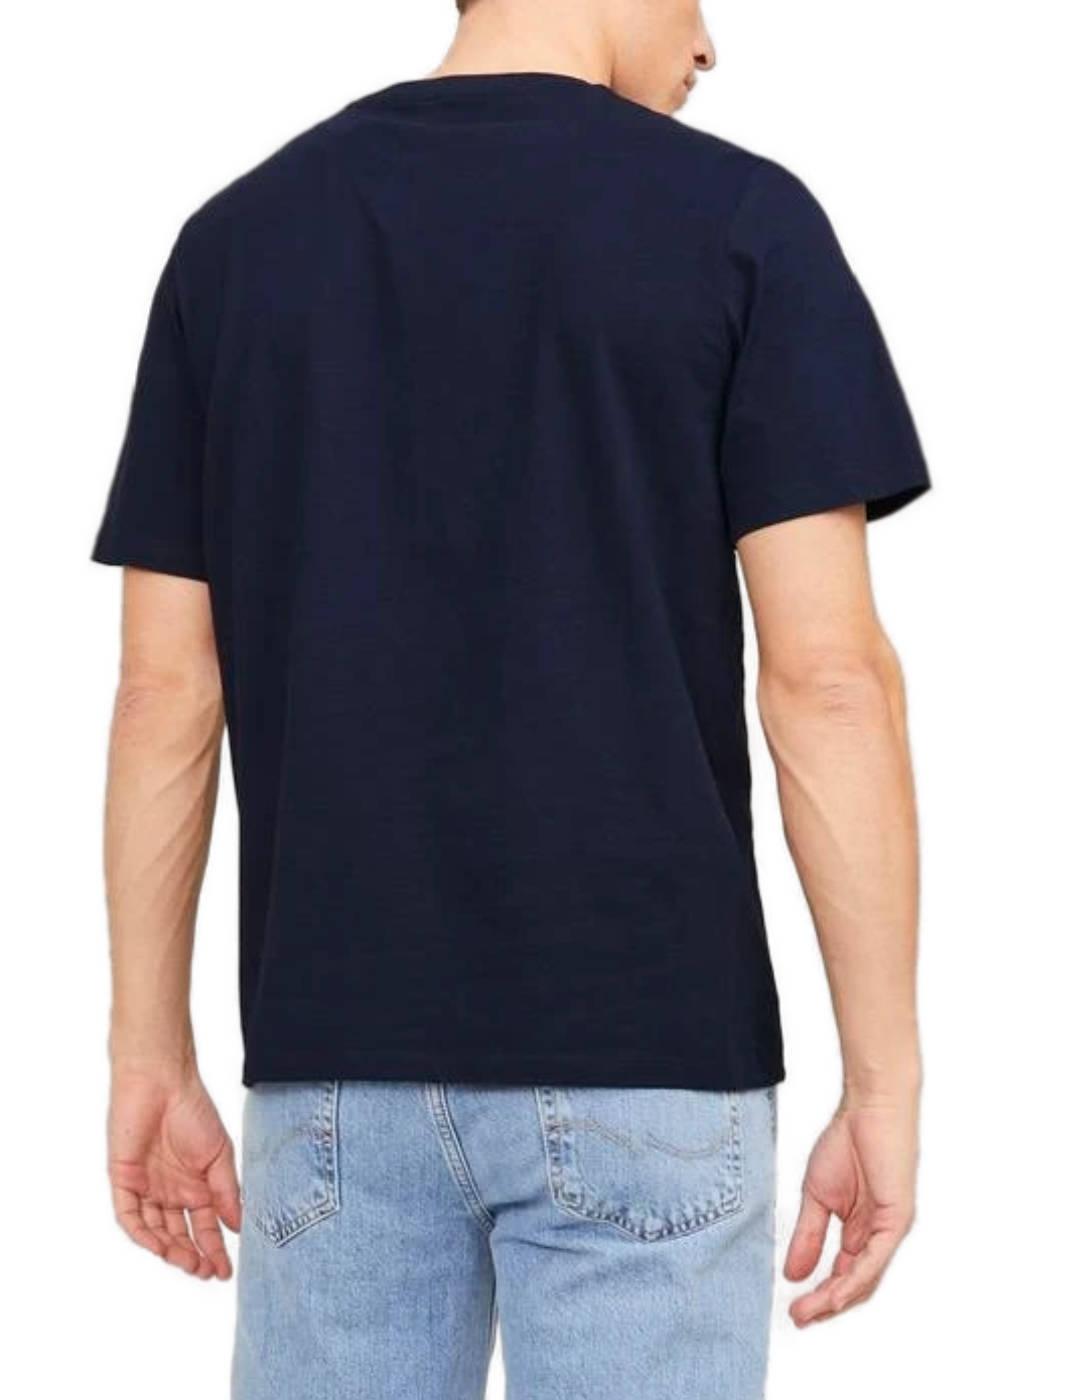 Camiseta básica - VERDE - Kiabi - 4.00€